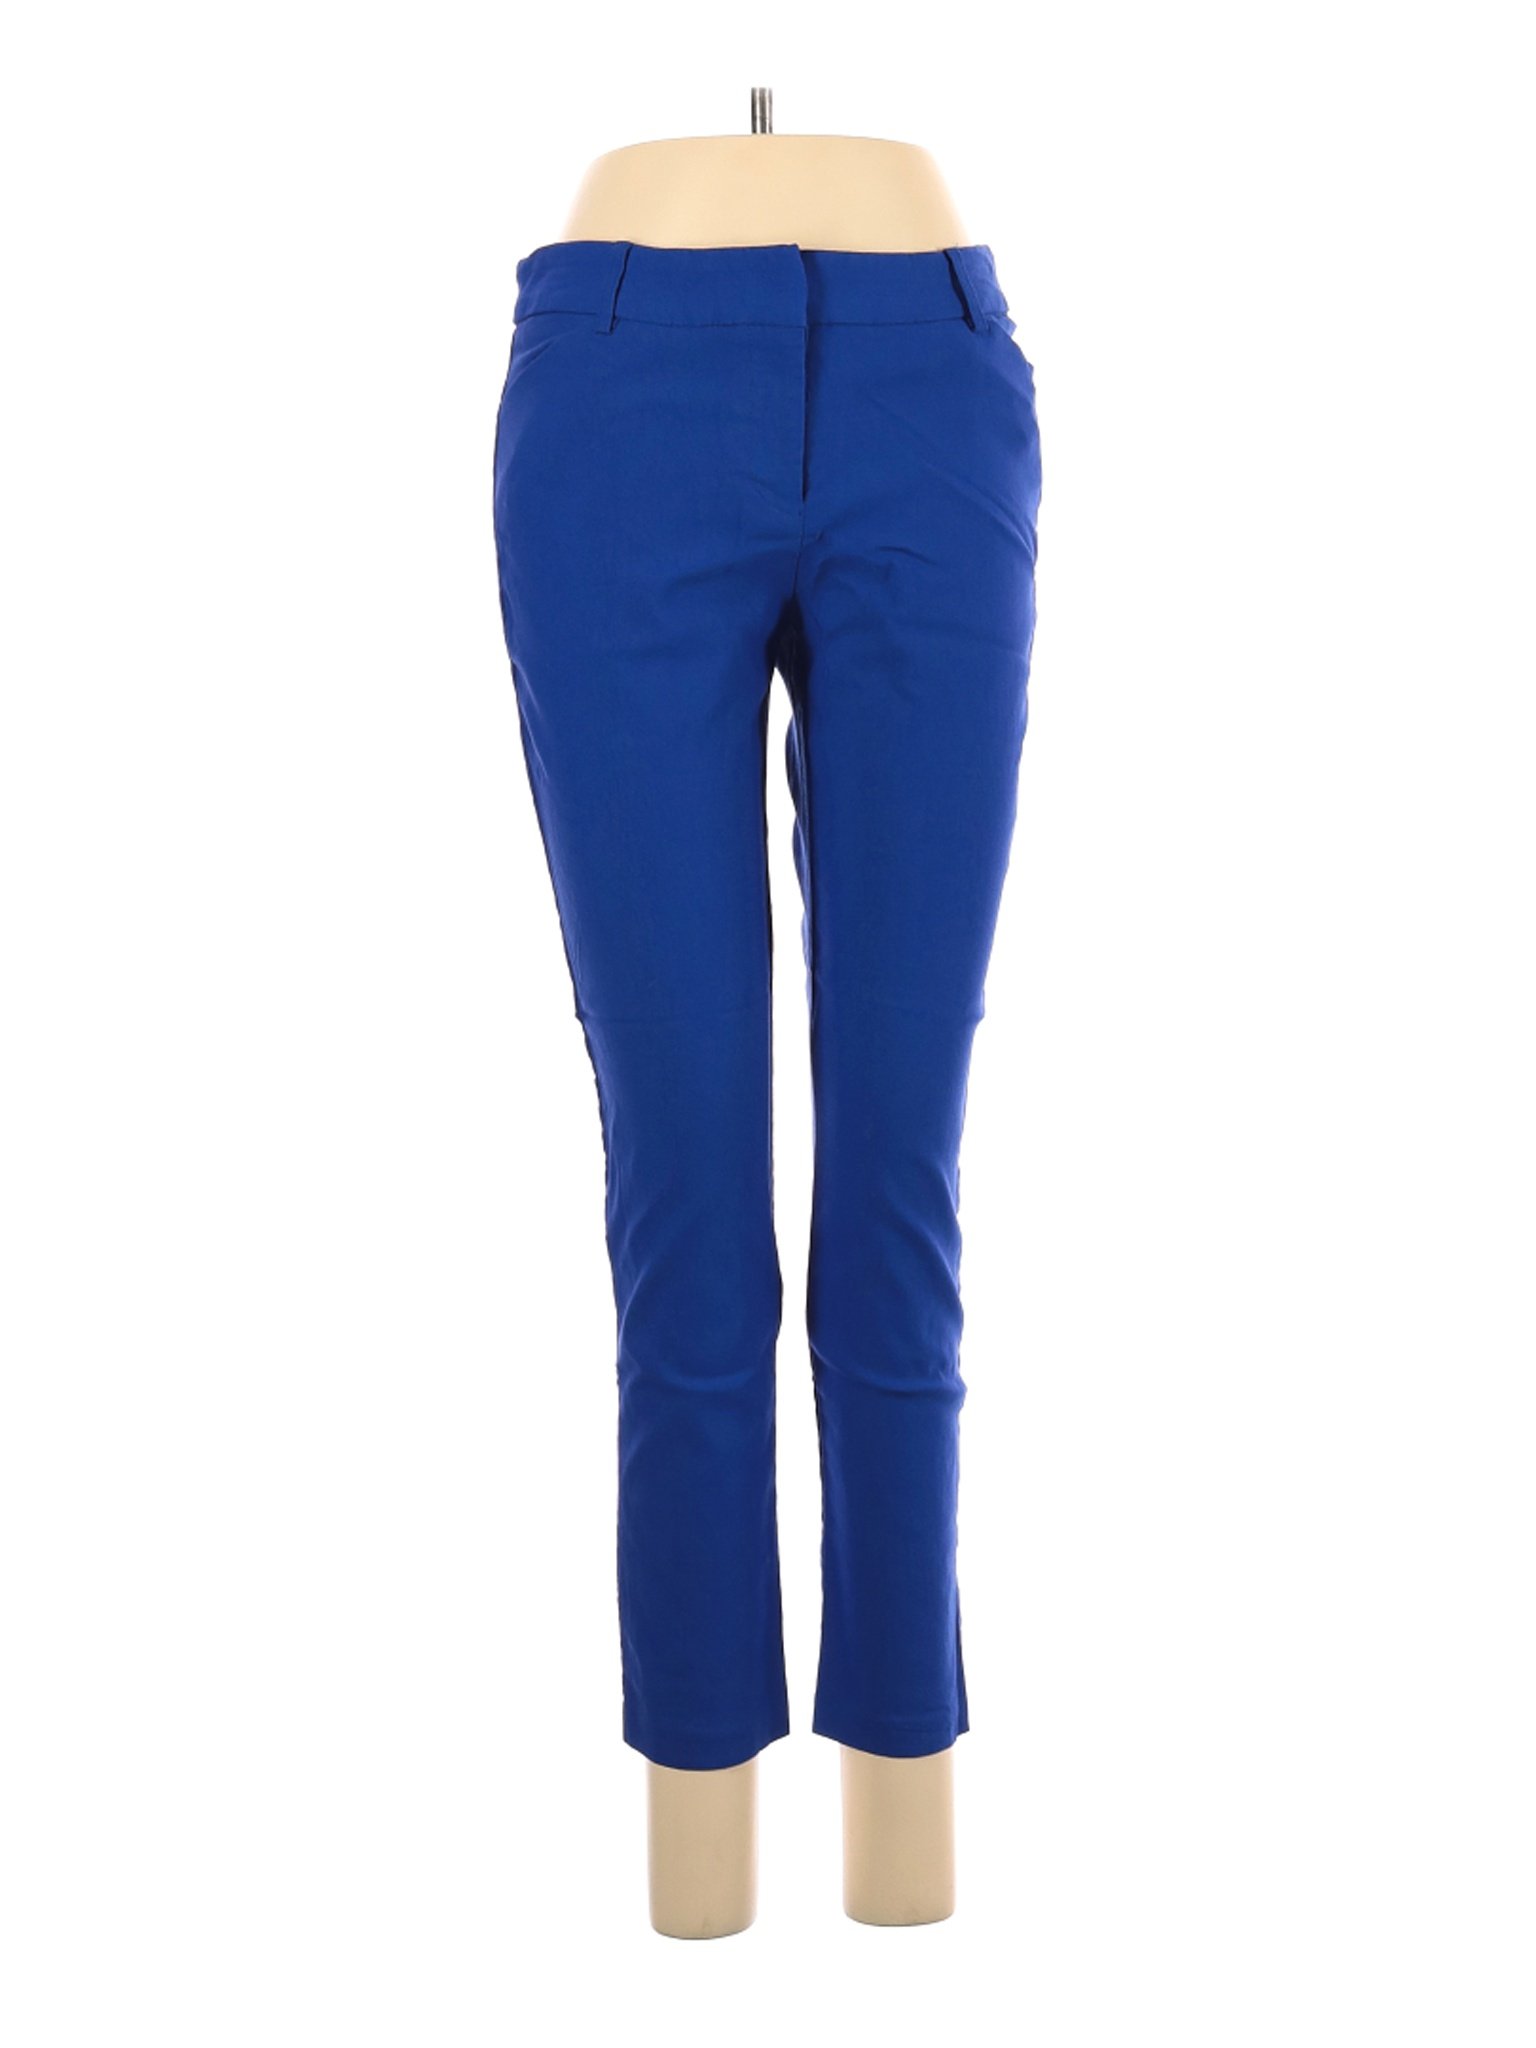 Wearever Women Blue Dress Pants L | eBay